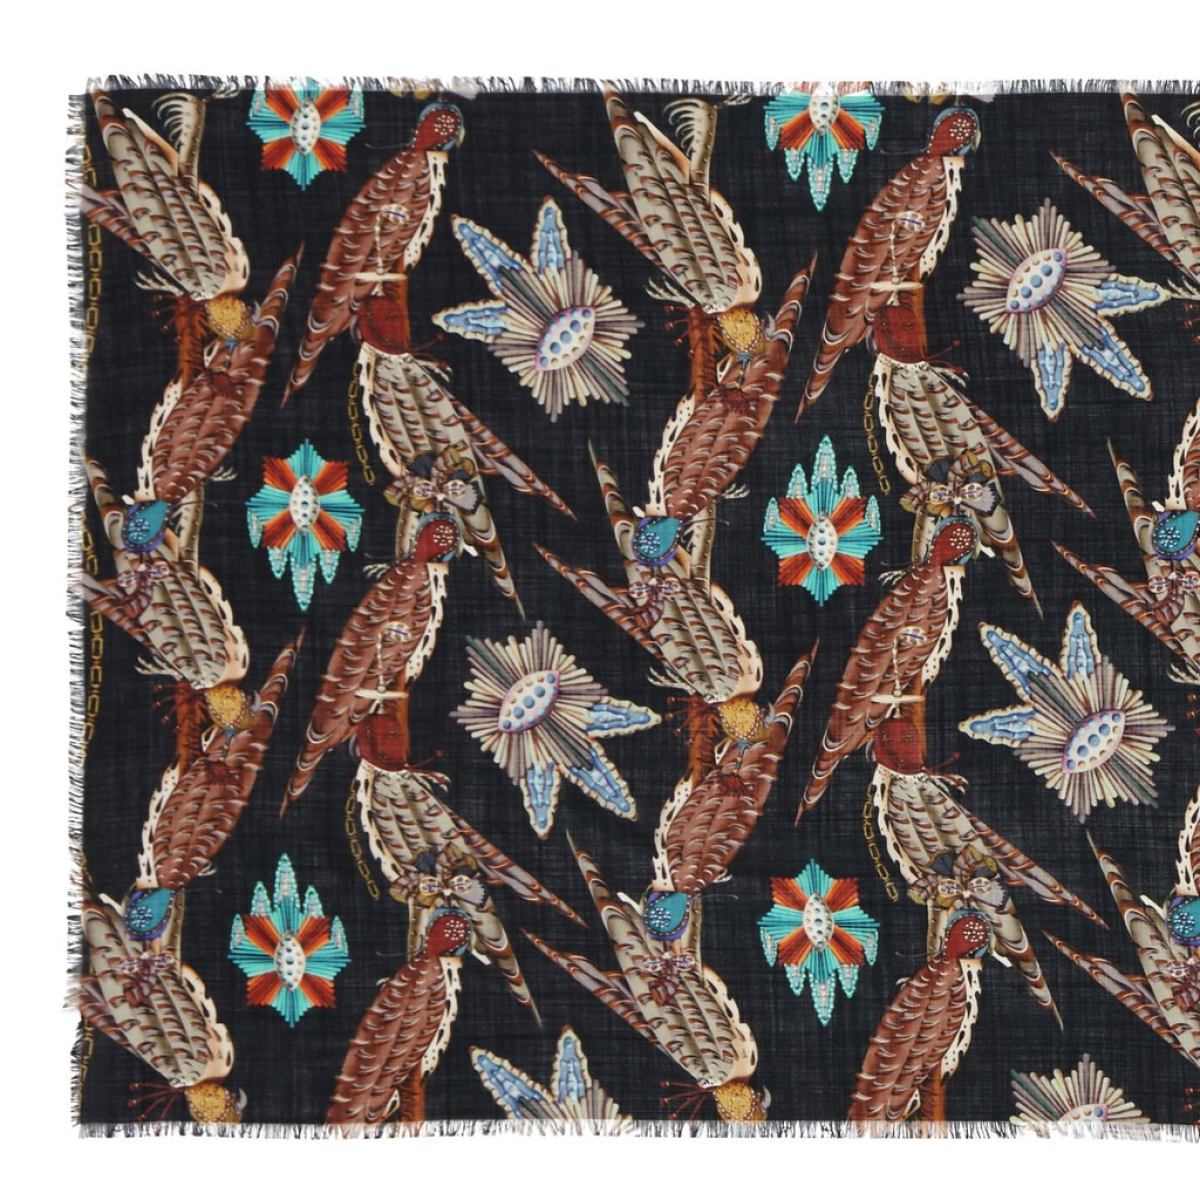 Großer Schal mit Falken-Motiv aus Wolle und Seide